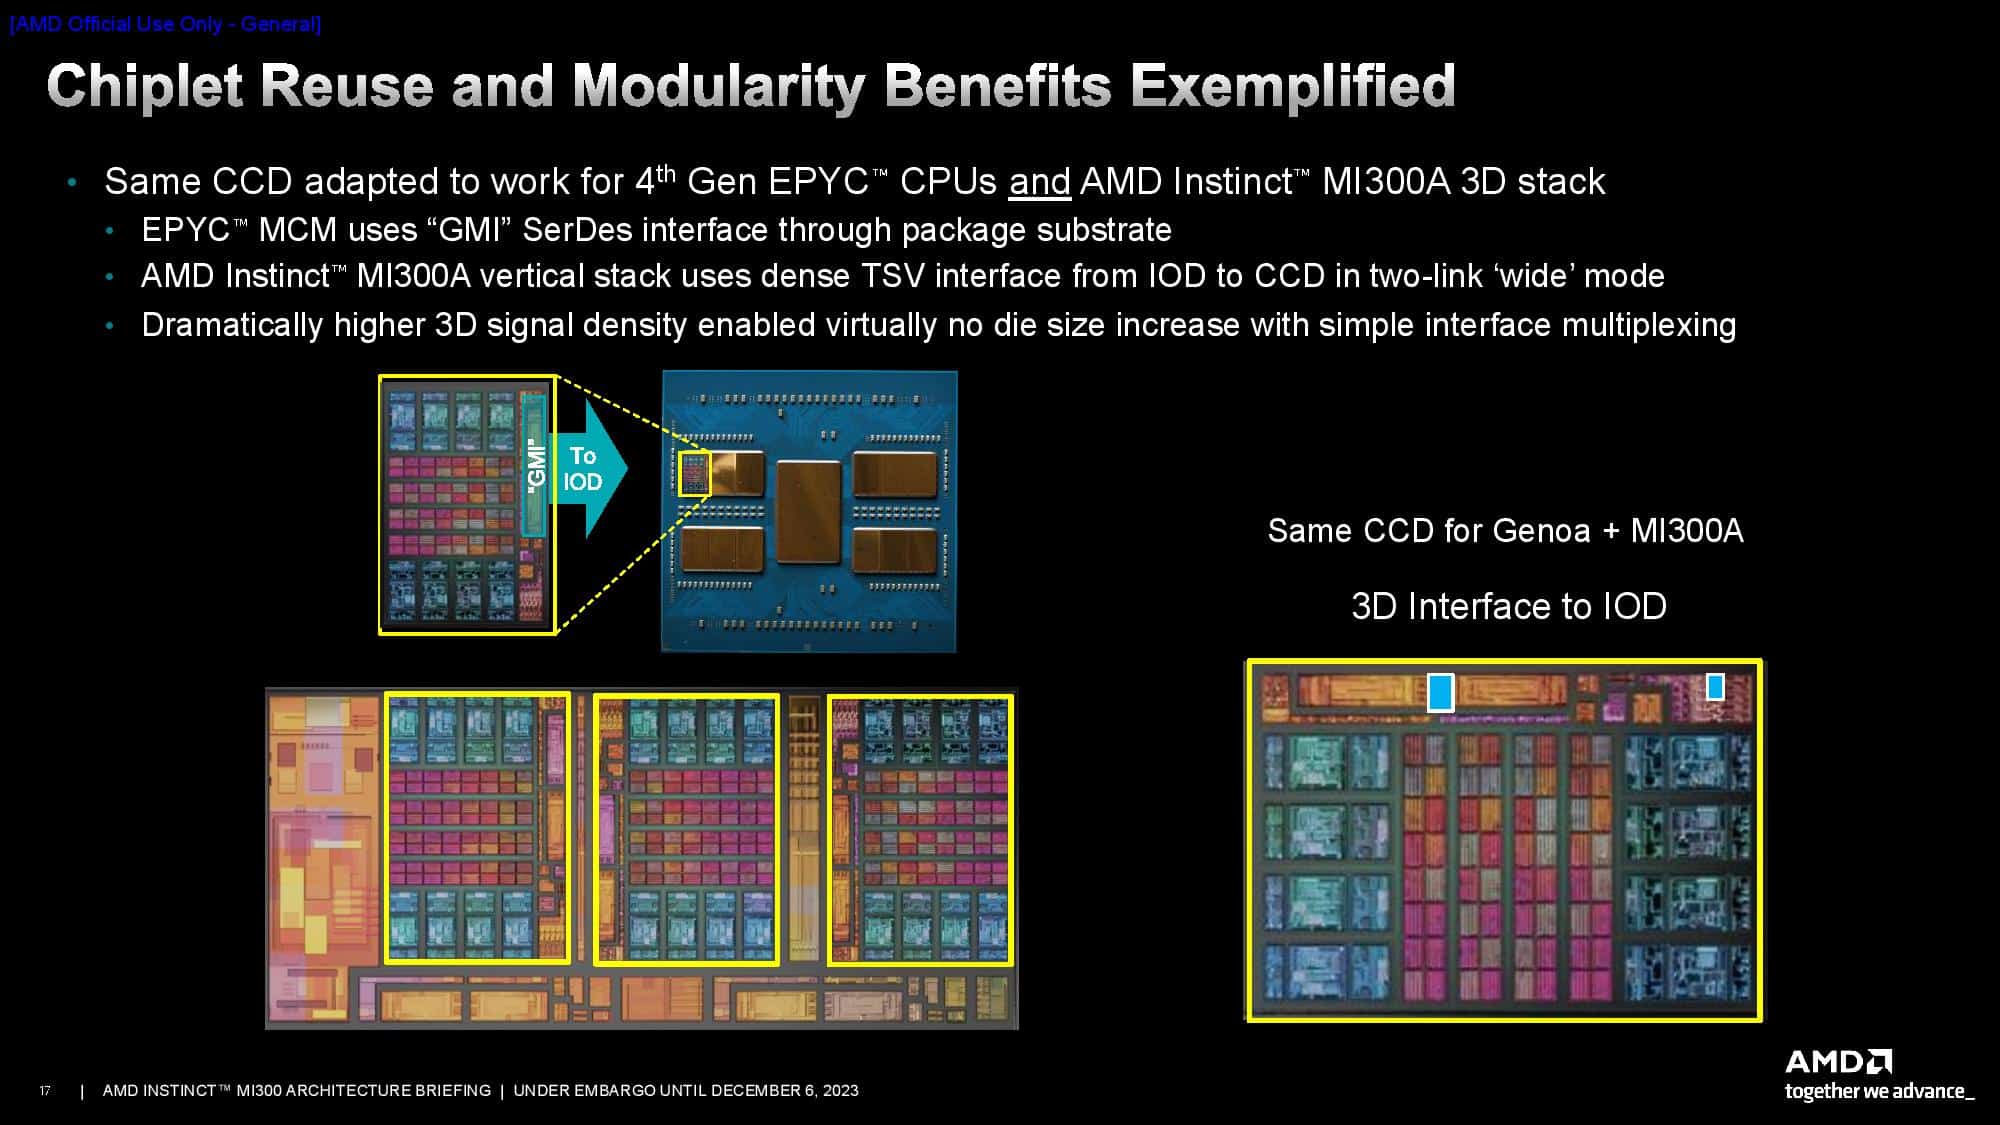 AMD Instrinct MI300 3